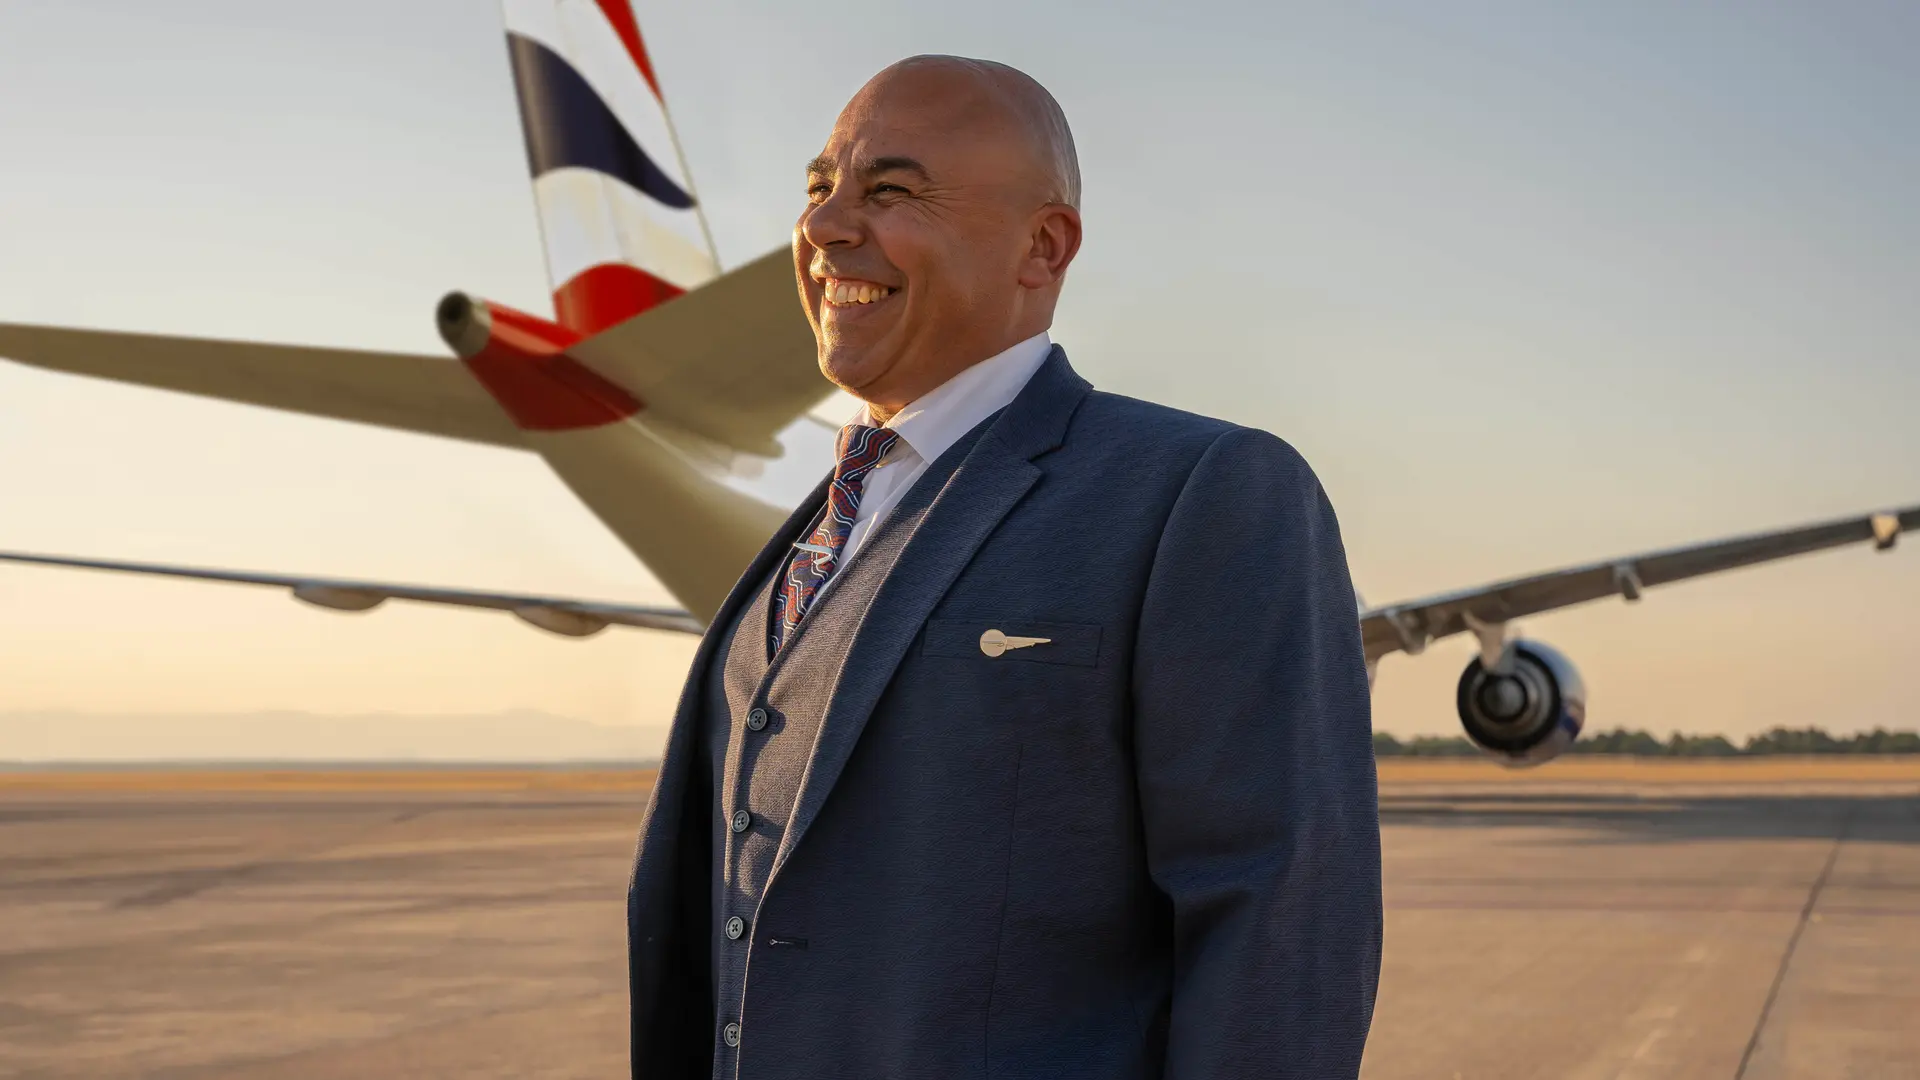 Airlines News - British Airways parades new uniforms